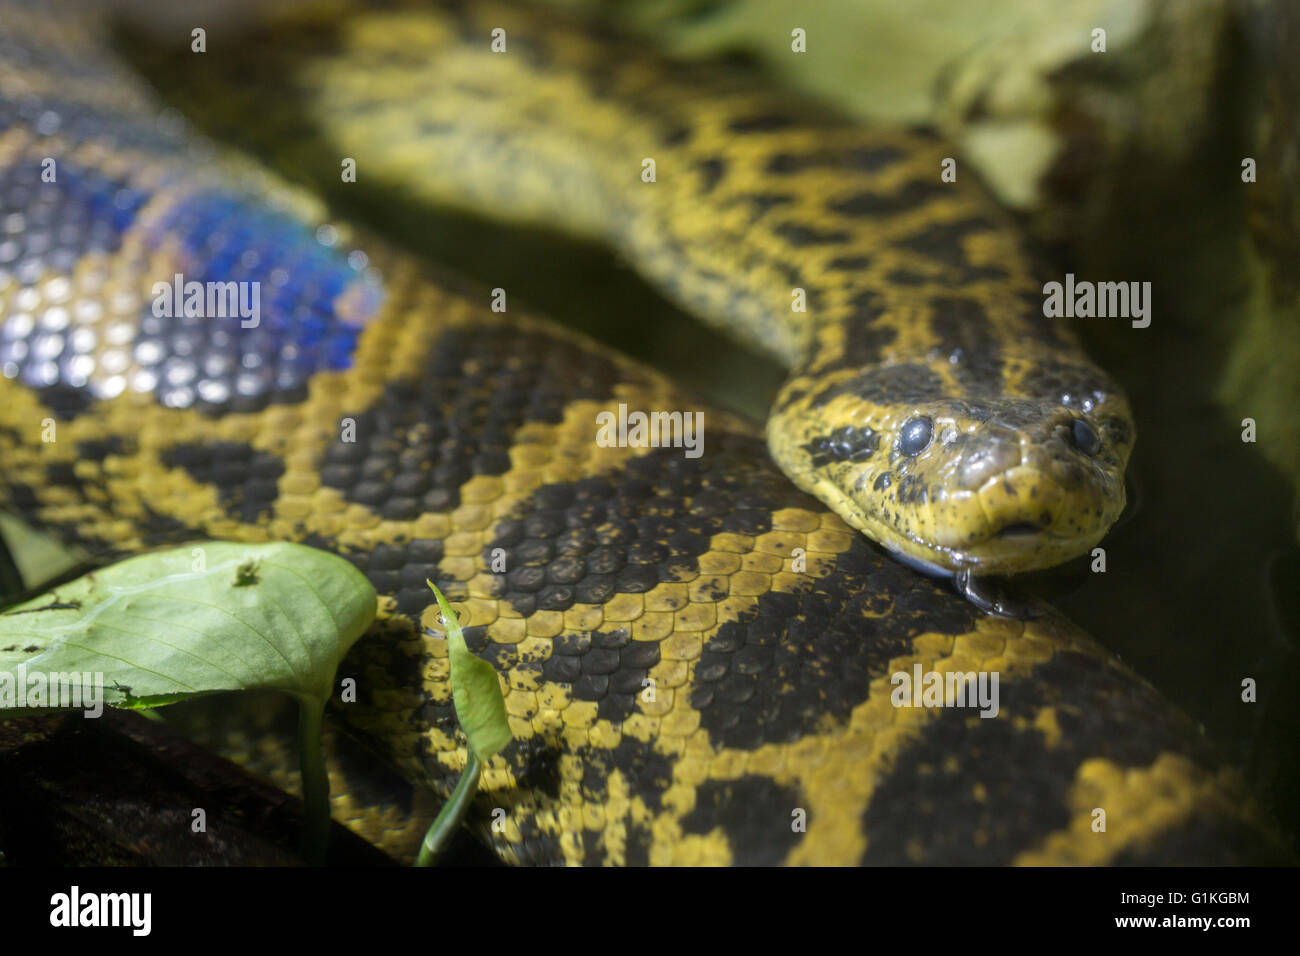 Un anaconda jaune ou anaconda du Paraguay, Eunectes notaeus, dans l'eau. Ce serpent est un des plus grands serpents dans le monde Banque D'Images